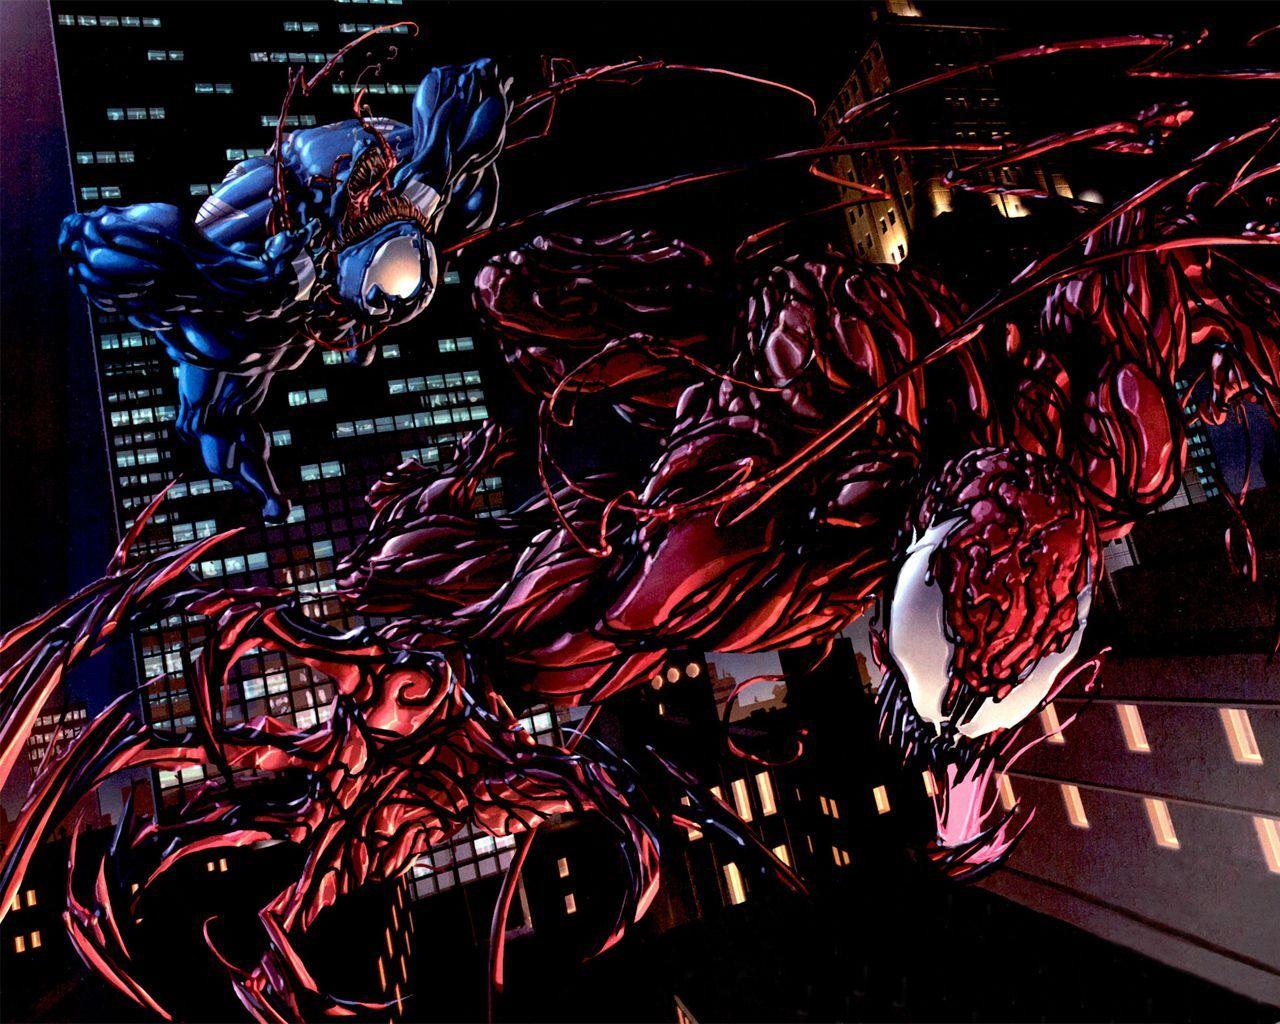 THE ALIEN SYMBIOTE. Venom, Super heros